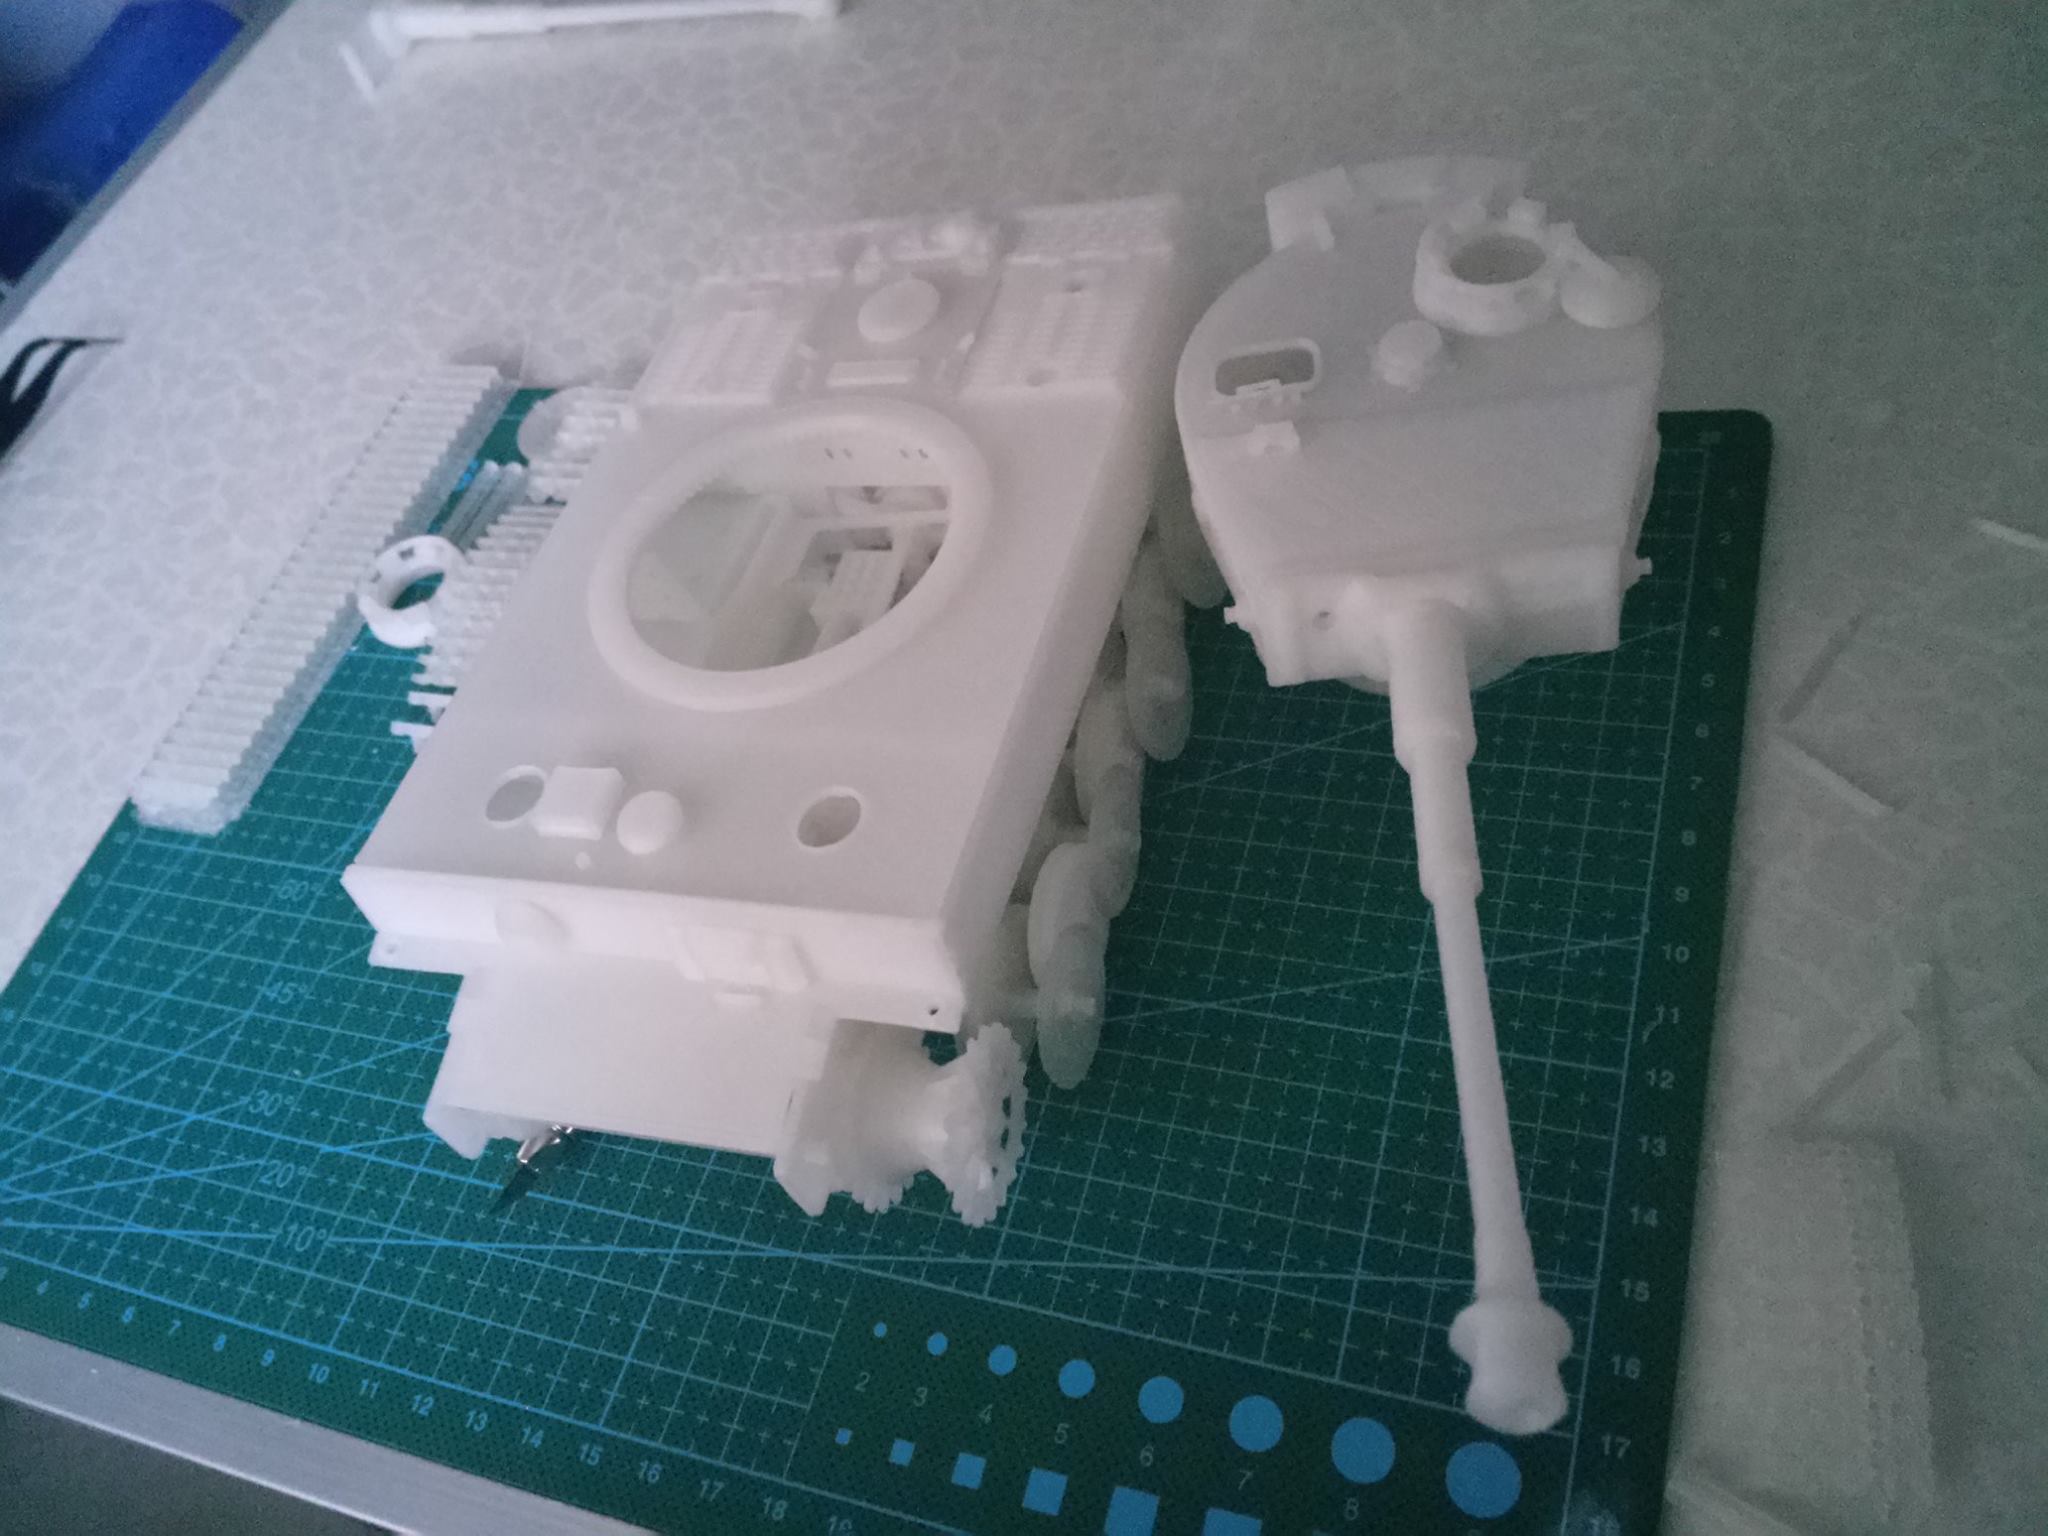 Tự thiết kế và tạo mẫu 3D mô hình xe tăng